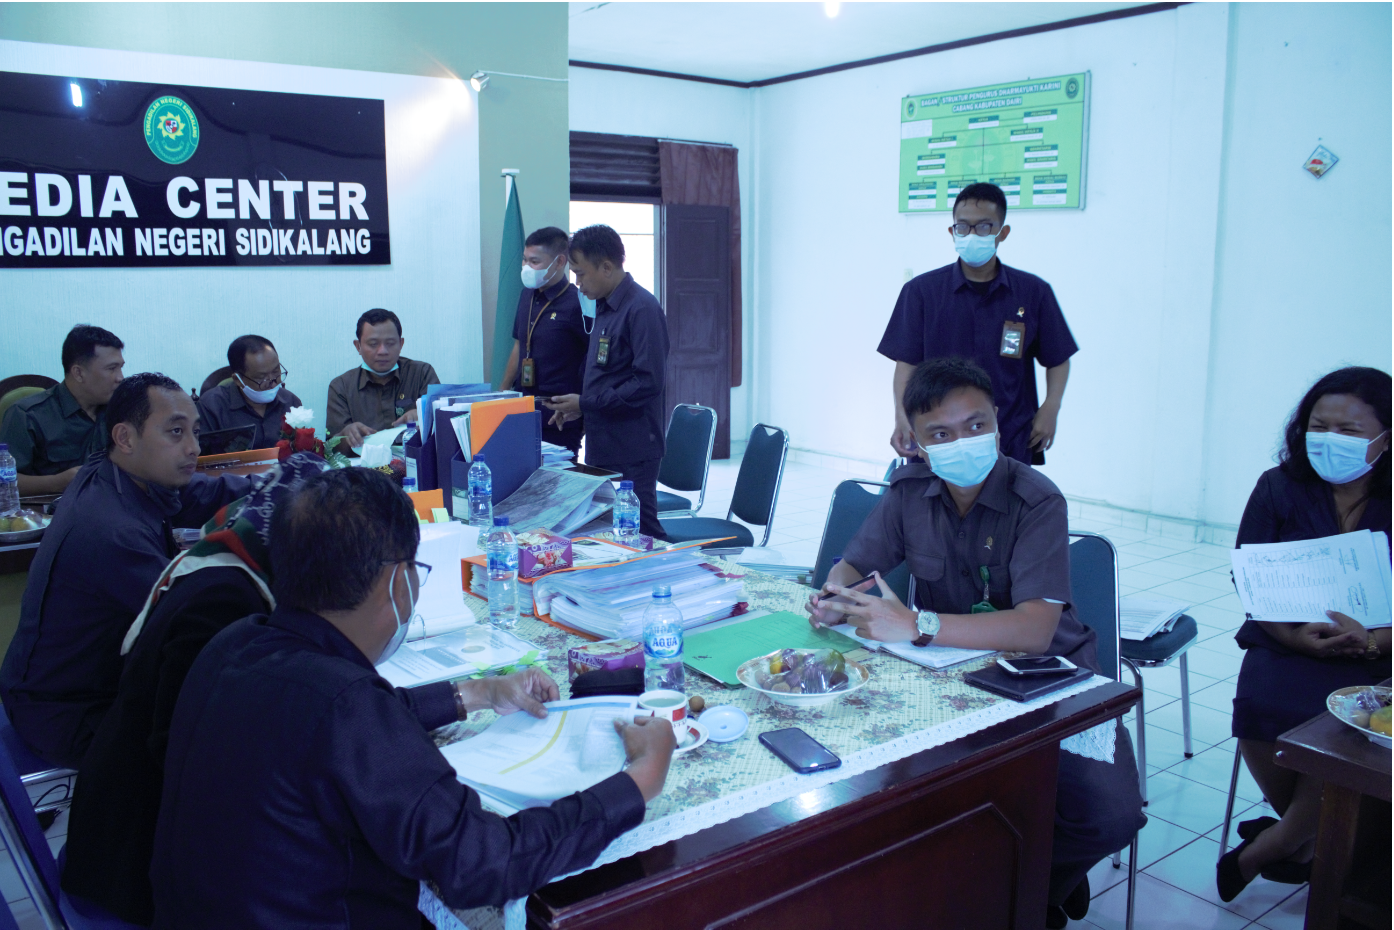 Keberlangsungan Meeting Surveilan (TAPM), Zona Integritas (ZI) dan Pengawasan rutin Pengadilan Tinggi Medan pada Pengadilan Negeri Sidikalang